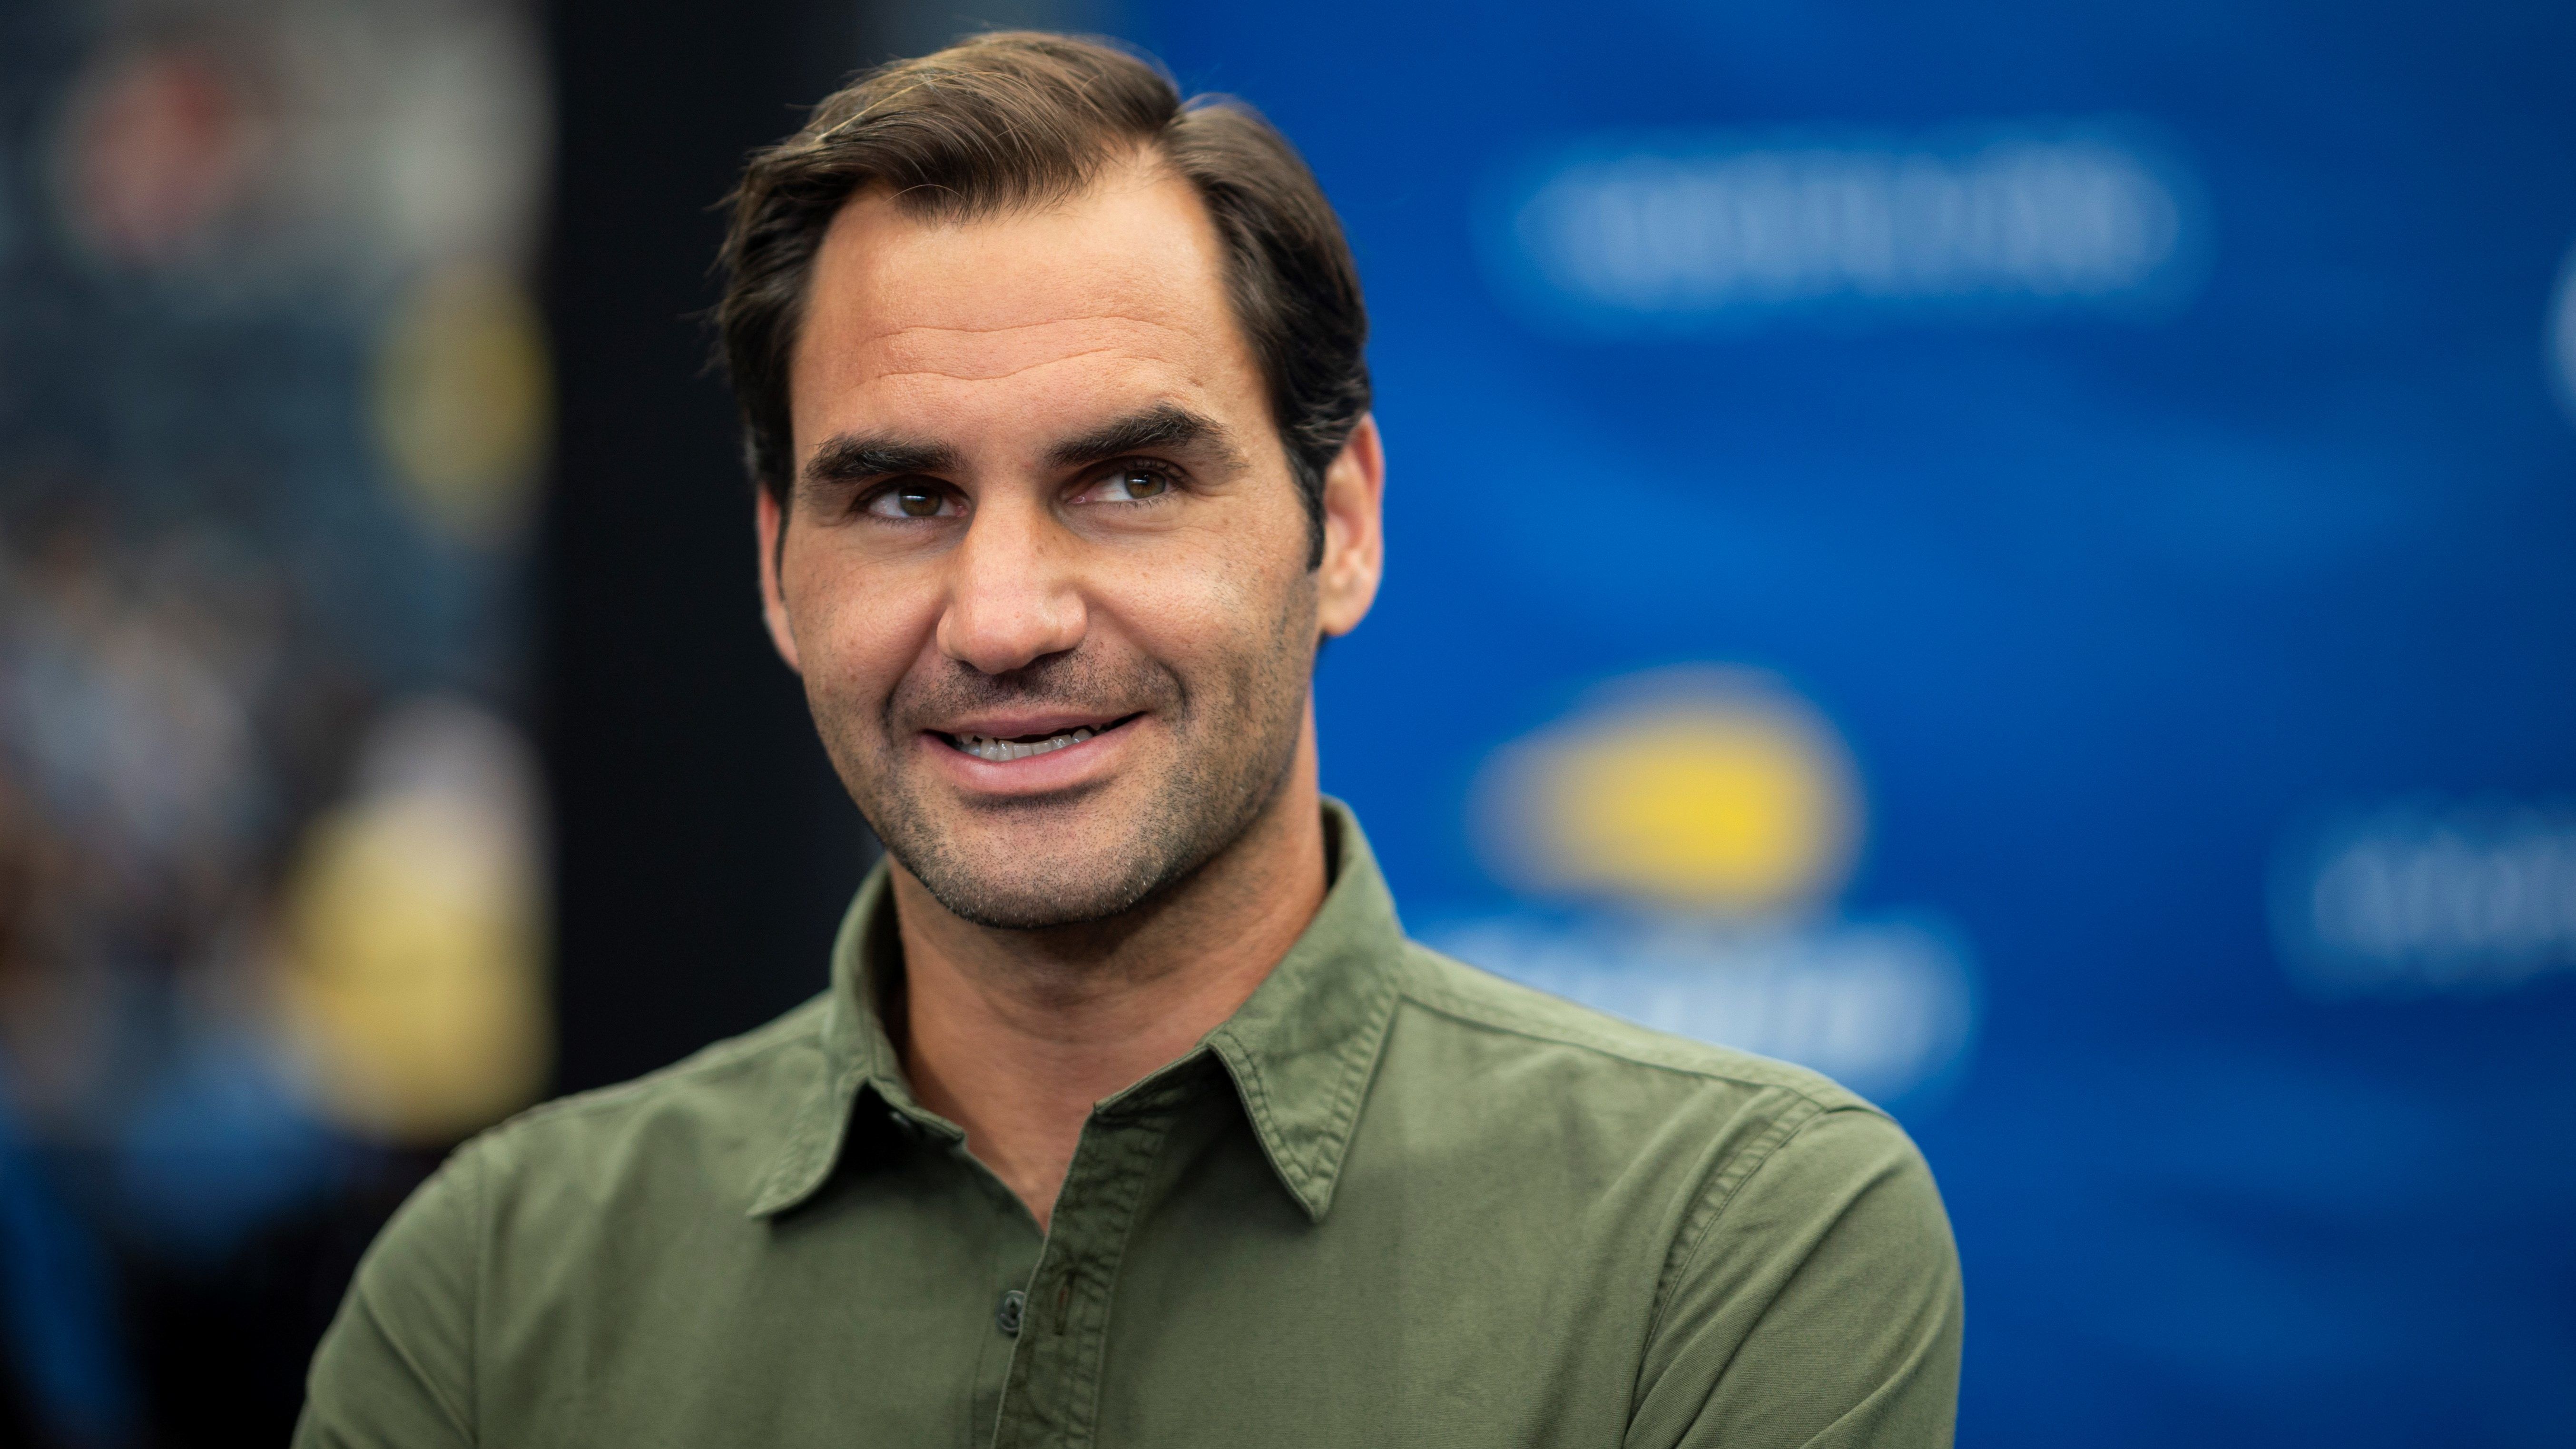 Roger Federer óriási összeggel szállt be a koronavírus elleni harcba